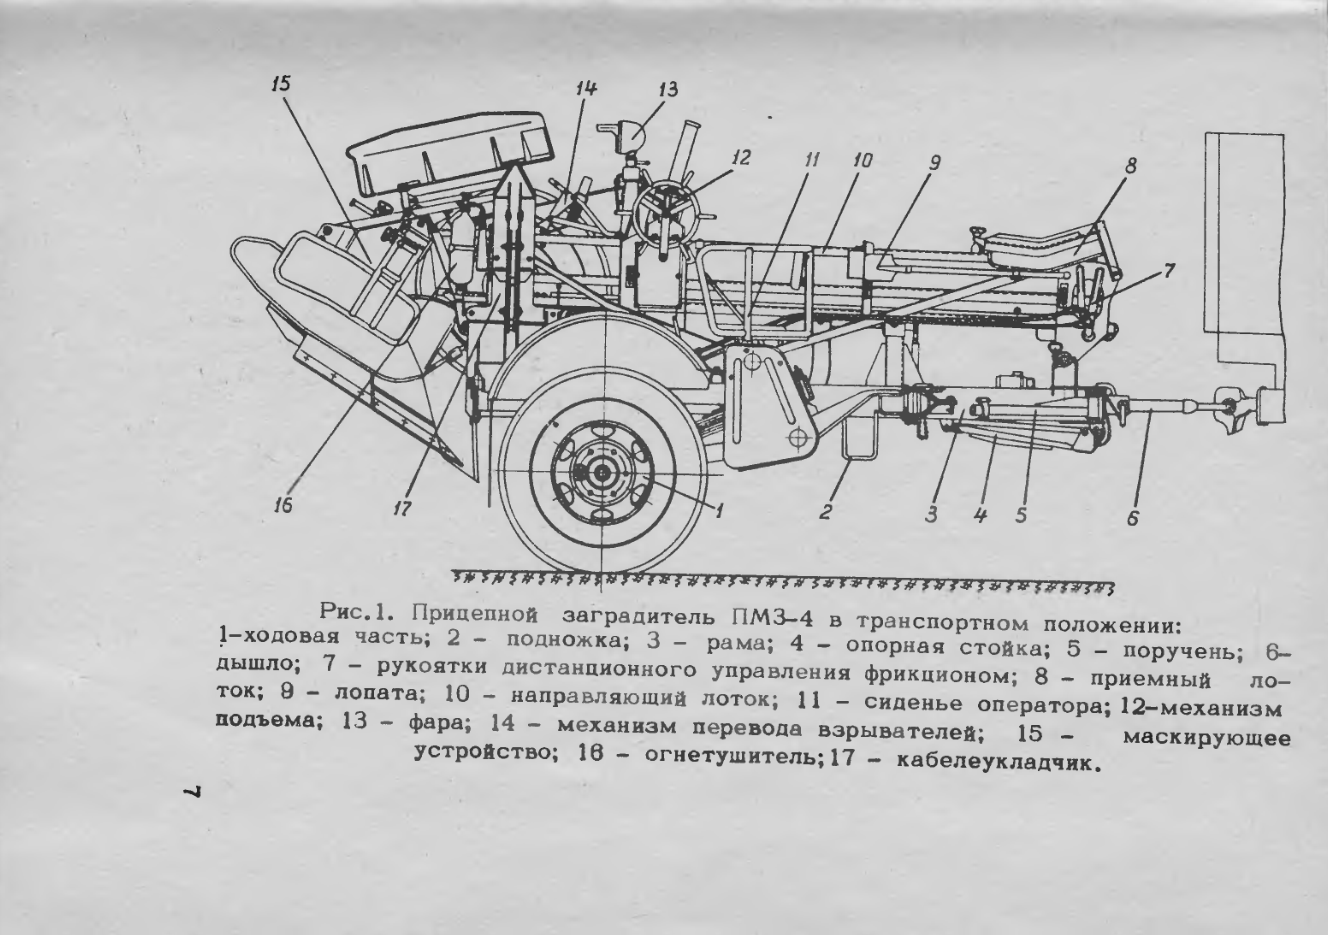 ПМЗ-4. Инструкция по устройству, эксплуатации и применению прицепного минного заградителя ПМЗ-4. 1969